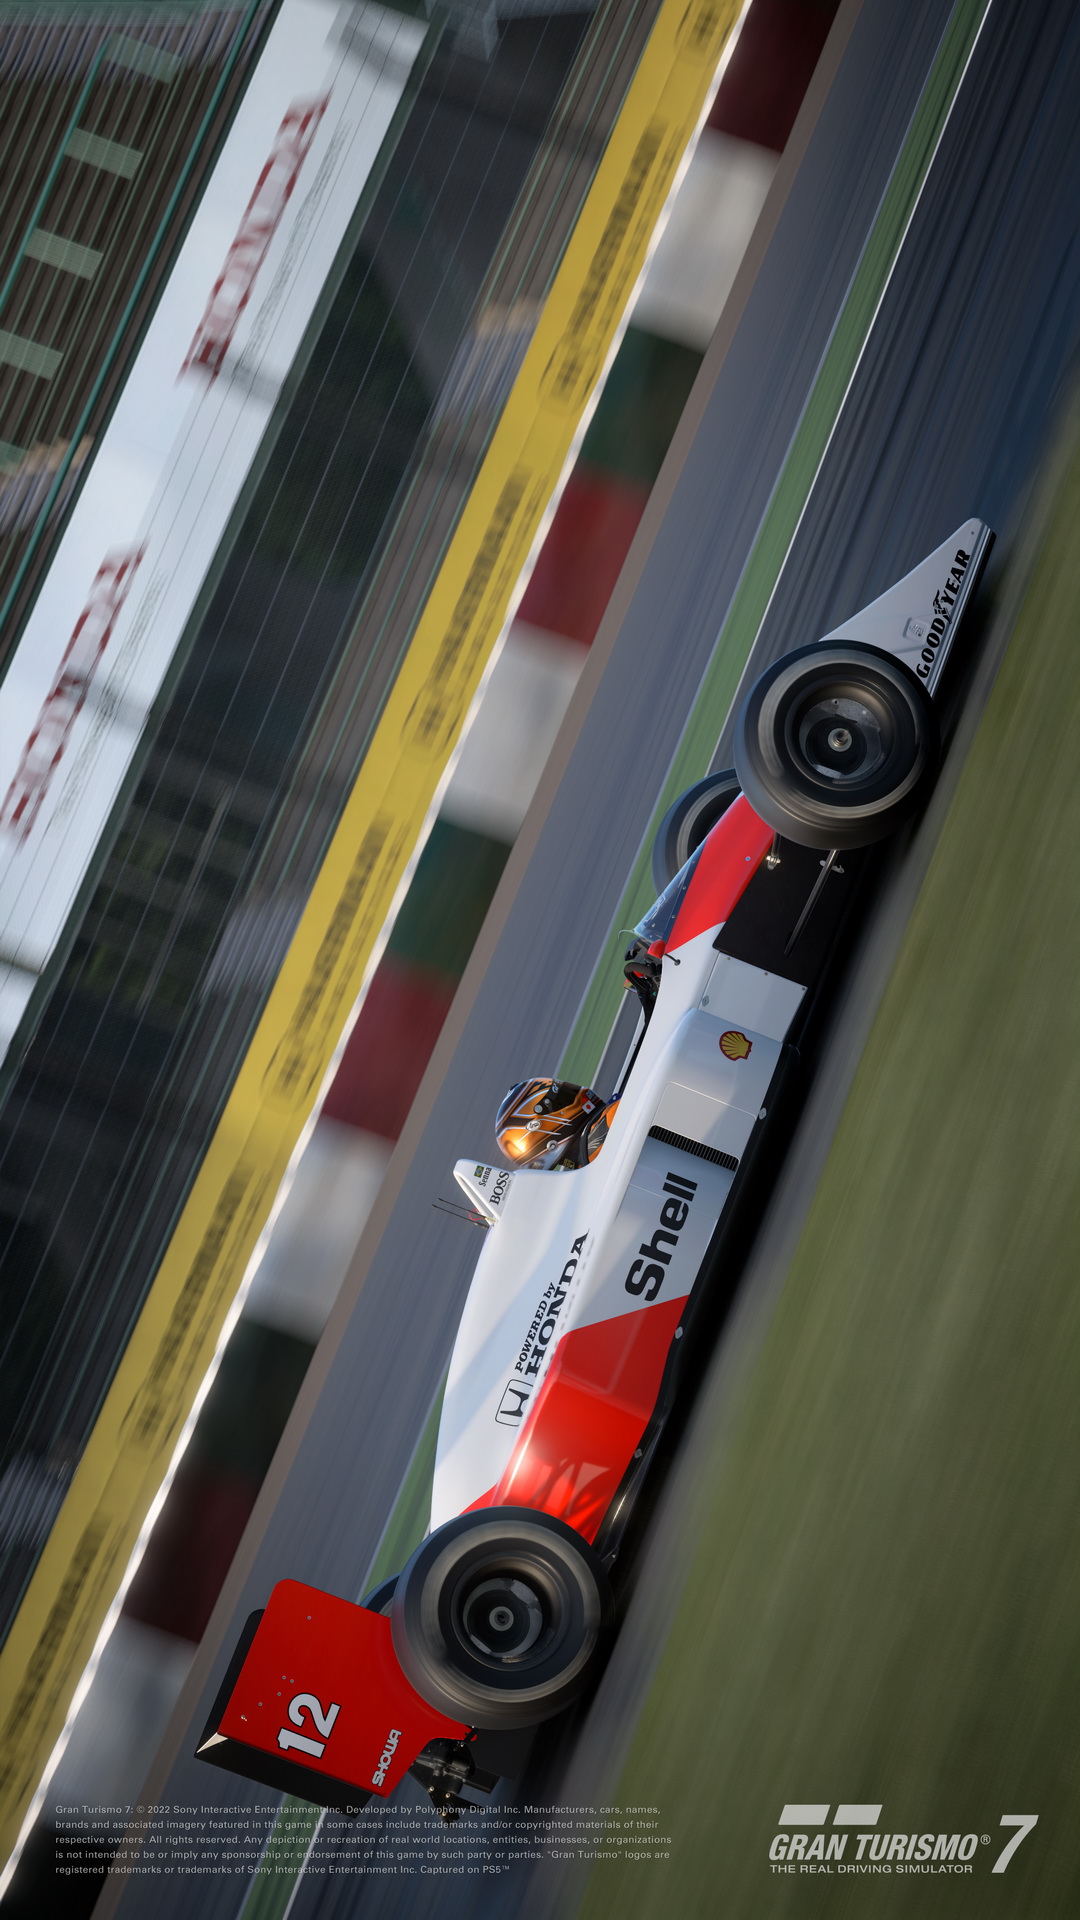 Gran Turismo 7 promete ser carta de amor para fãs do automobilismo